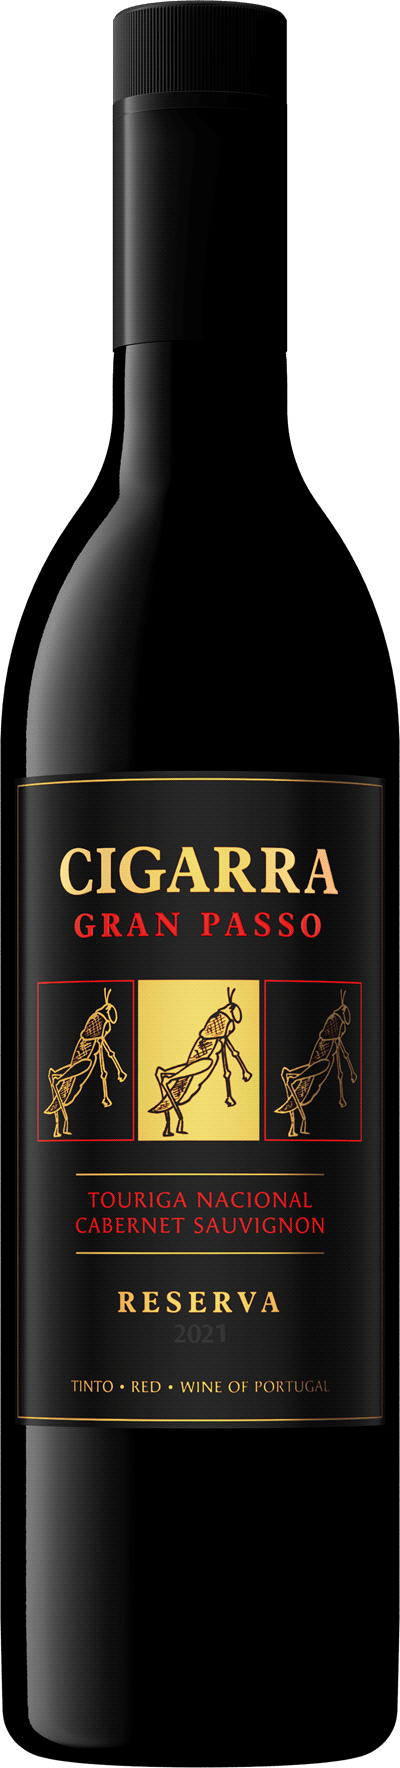 Cigarra Gran Passo Touriga Nacional Cabernet Sauvignon